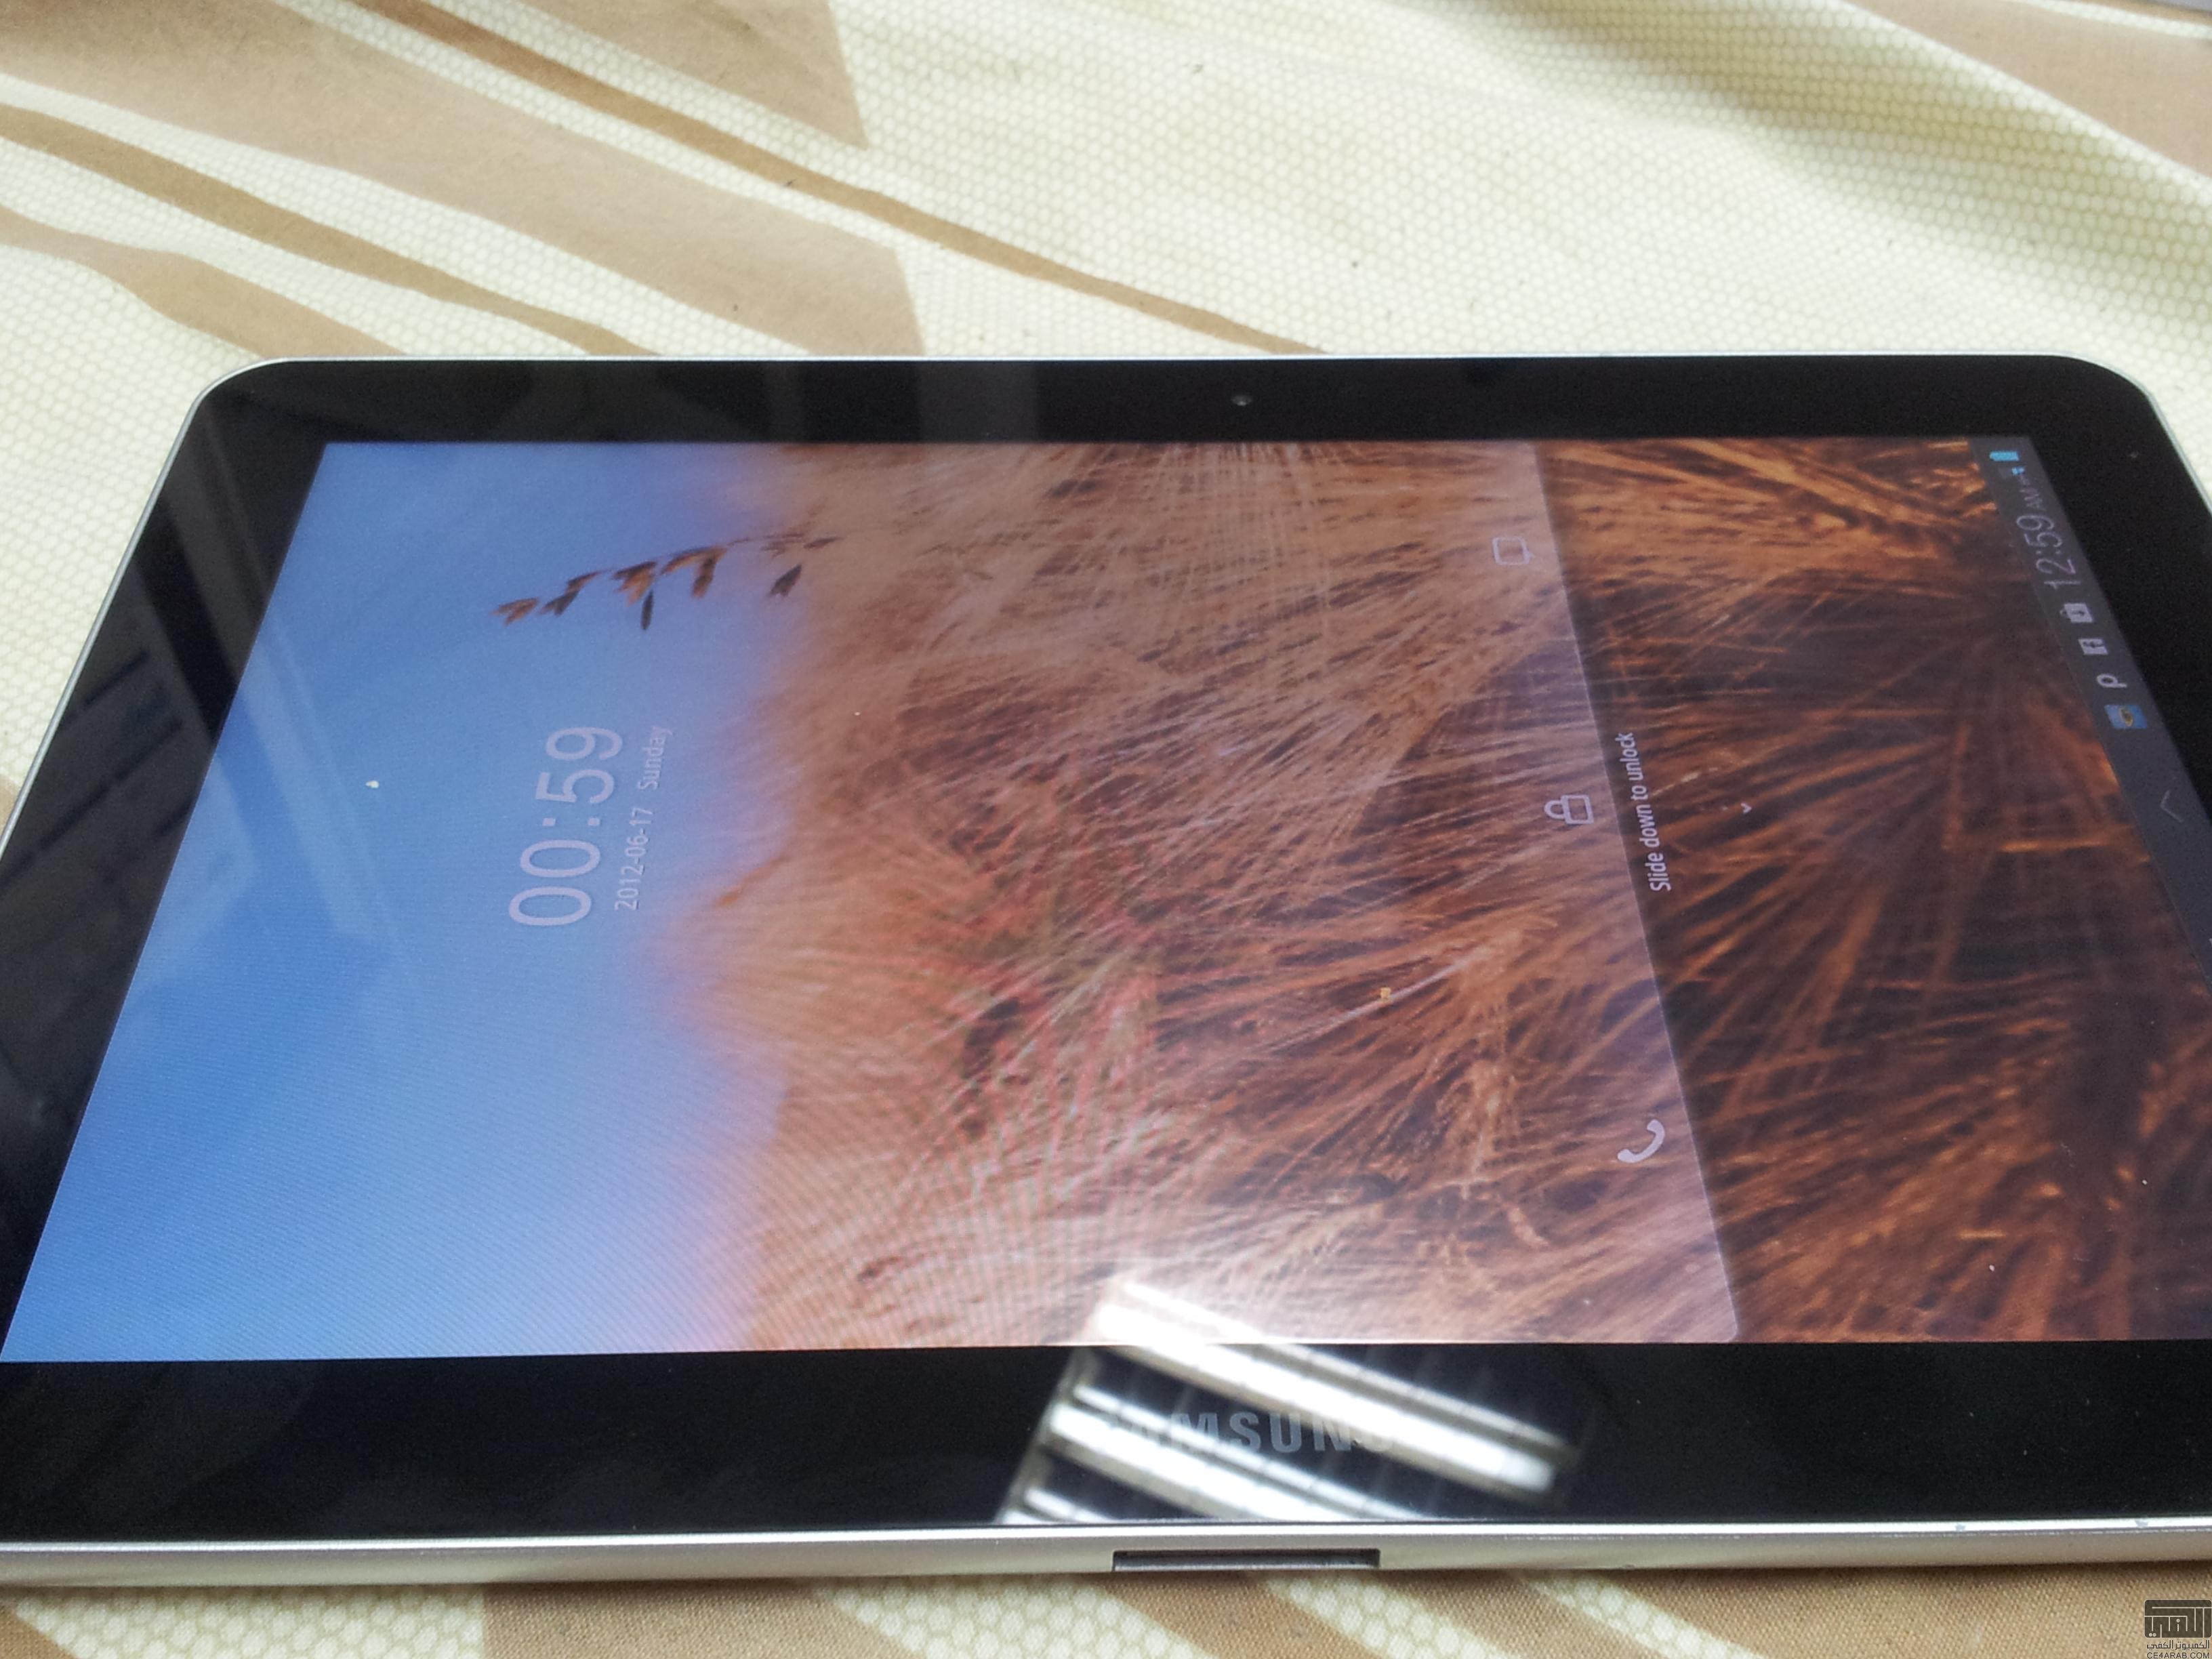 للبيع في الرياض جهاز جالاكسي تاب ابيض 10.1 3G مع حافظة اصلية